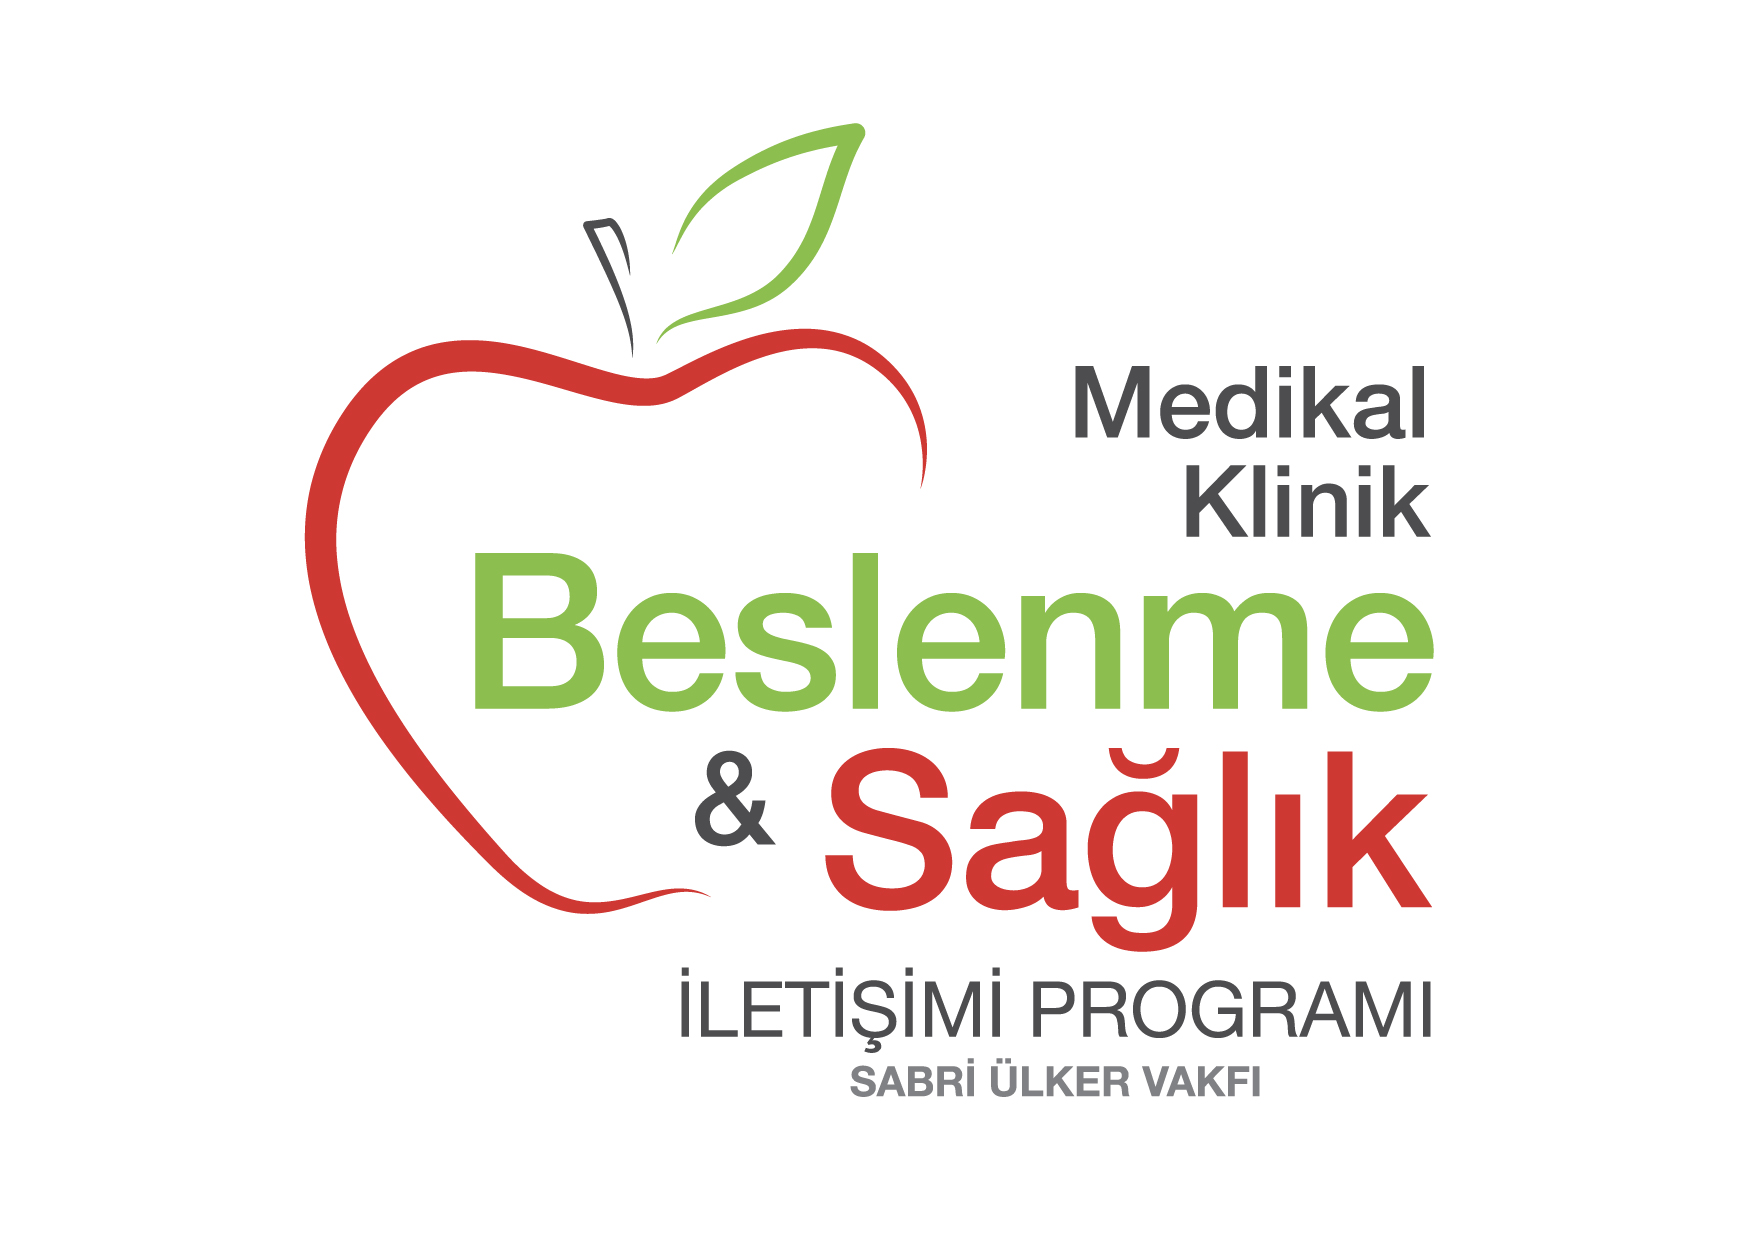 Türkiye’de Bir İlk! Tıp Doktorları Sabri Ülker Vakfı Medikal Klinik Beslenme ve Sağlık İletişimi Programı’nda Beslenme Bilimi Üzerine Eğitim Aldı